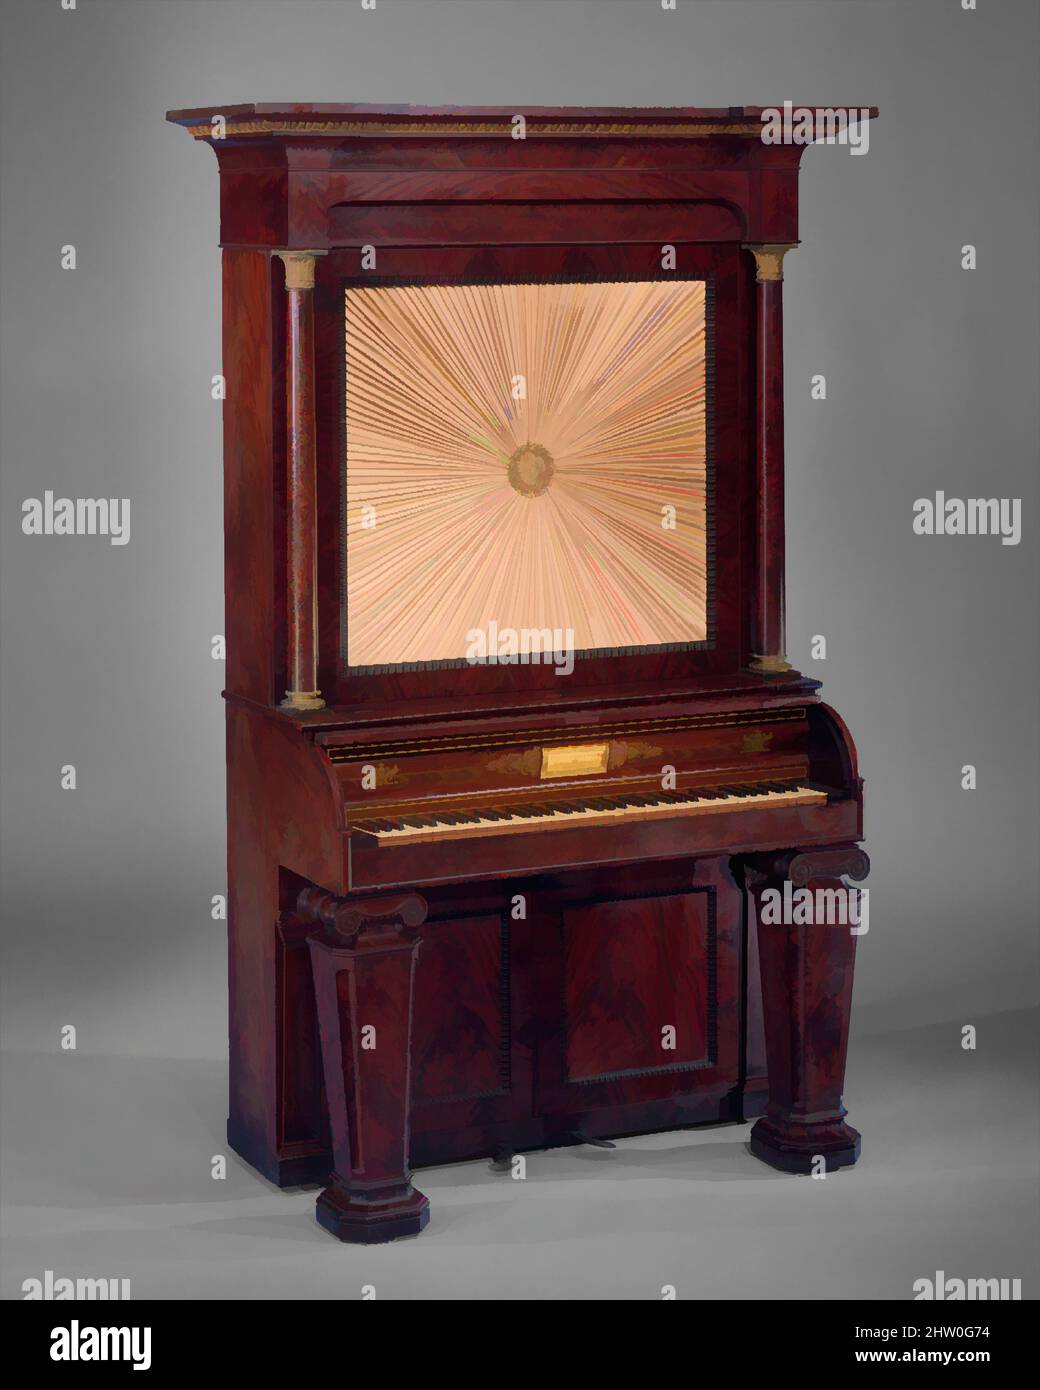 Art inspiré par le piano à cabinet vertical, 1835, New York, États-Unis, américain, Bois, divers matériaux, case L. (perpendiculaire au clavier): 60,5 cm (23-7/8 po); W.: (Parallèle au clavier): 120 cm (47-1/4 po): Total H.: 215,5 cm (84-7/8 po); 3 octave W.: 49 cm (19-3/8 po, œuvres classiques modernisées par Artotop avec une touche de modernité. Formes, couleur et valeur, impact visuel accrocheur sur l'art émotions par la liberté d'œuvres d'art d'une manière contemporaine. Un message intemporel qui cherche une nouvelle direction créative. Artistes qui se tournent vers le support numérique et créent le NFT Artotop Banque D'Images